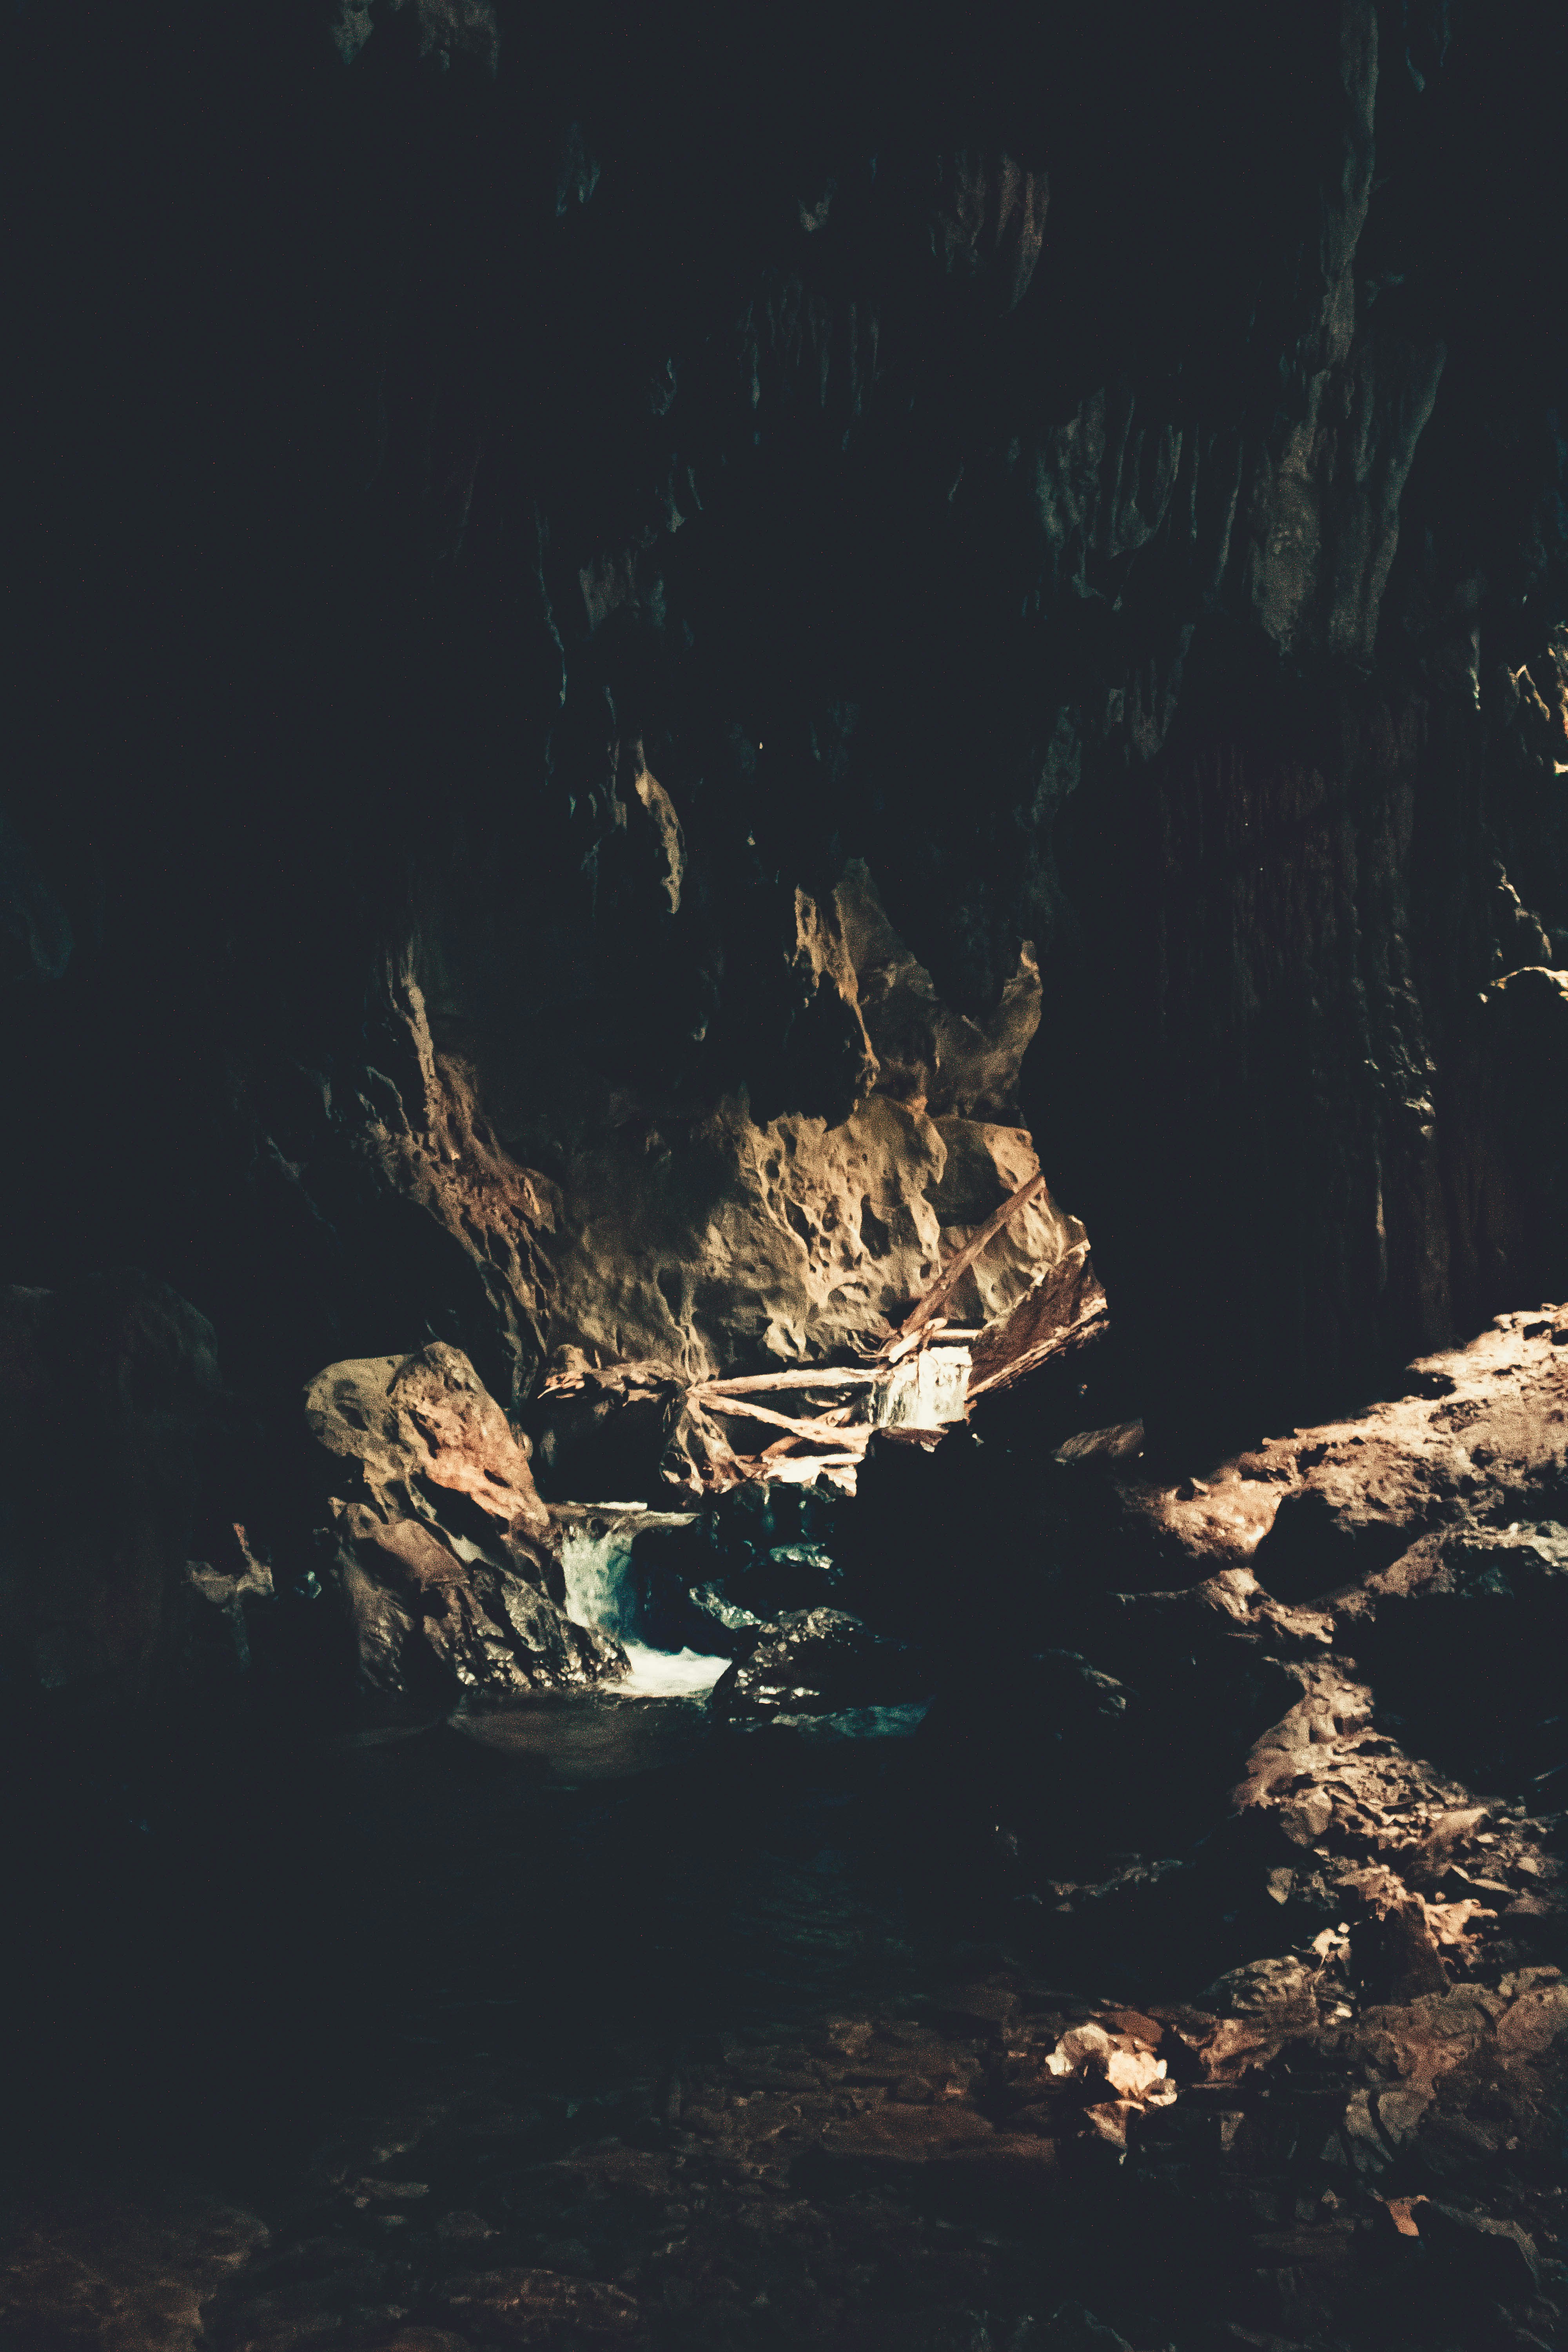 caverna escuro com riacho de água e rochas esculpidas pela natureza - Caverna do Diabo dark cave with water stream and rocks carved by nature